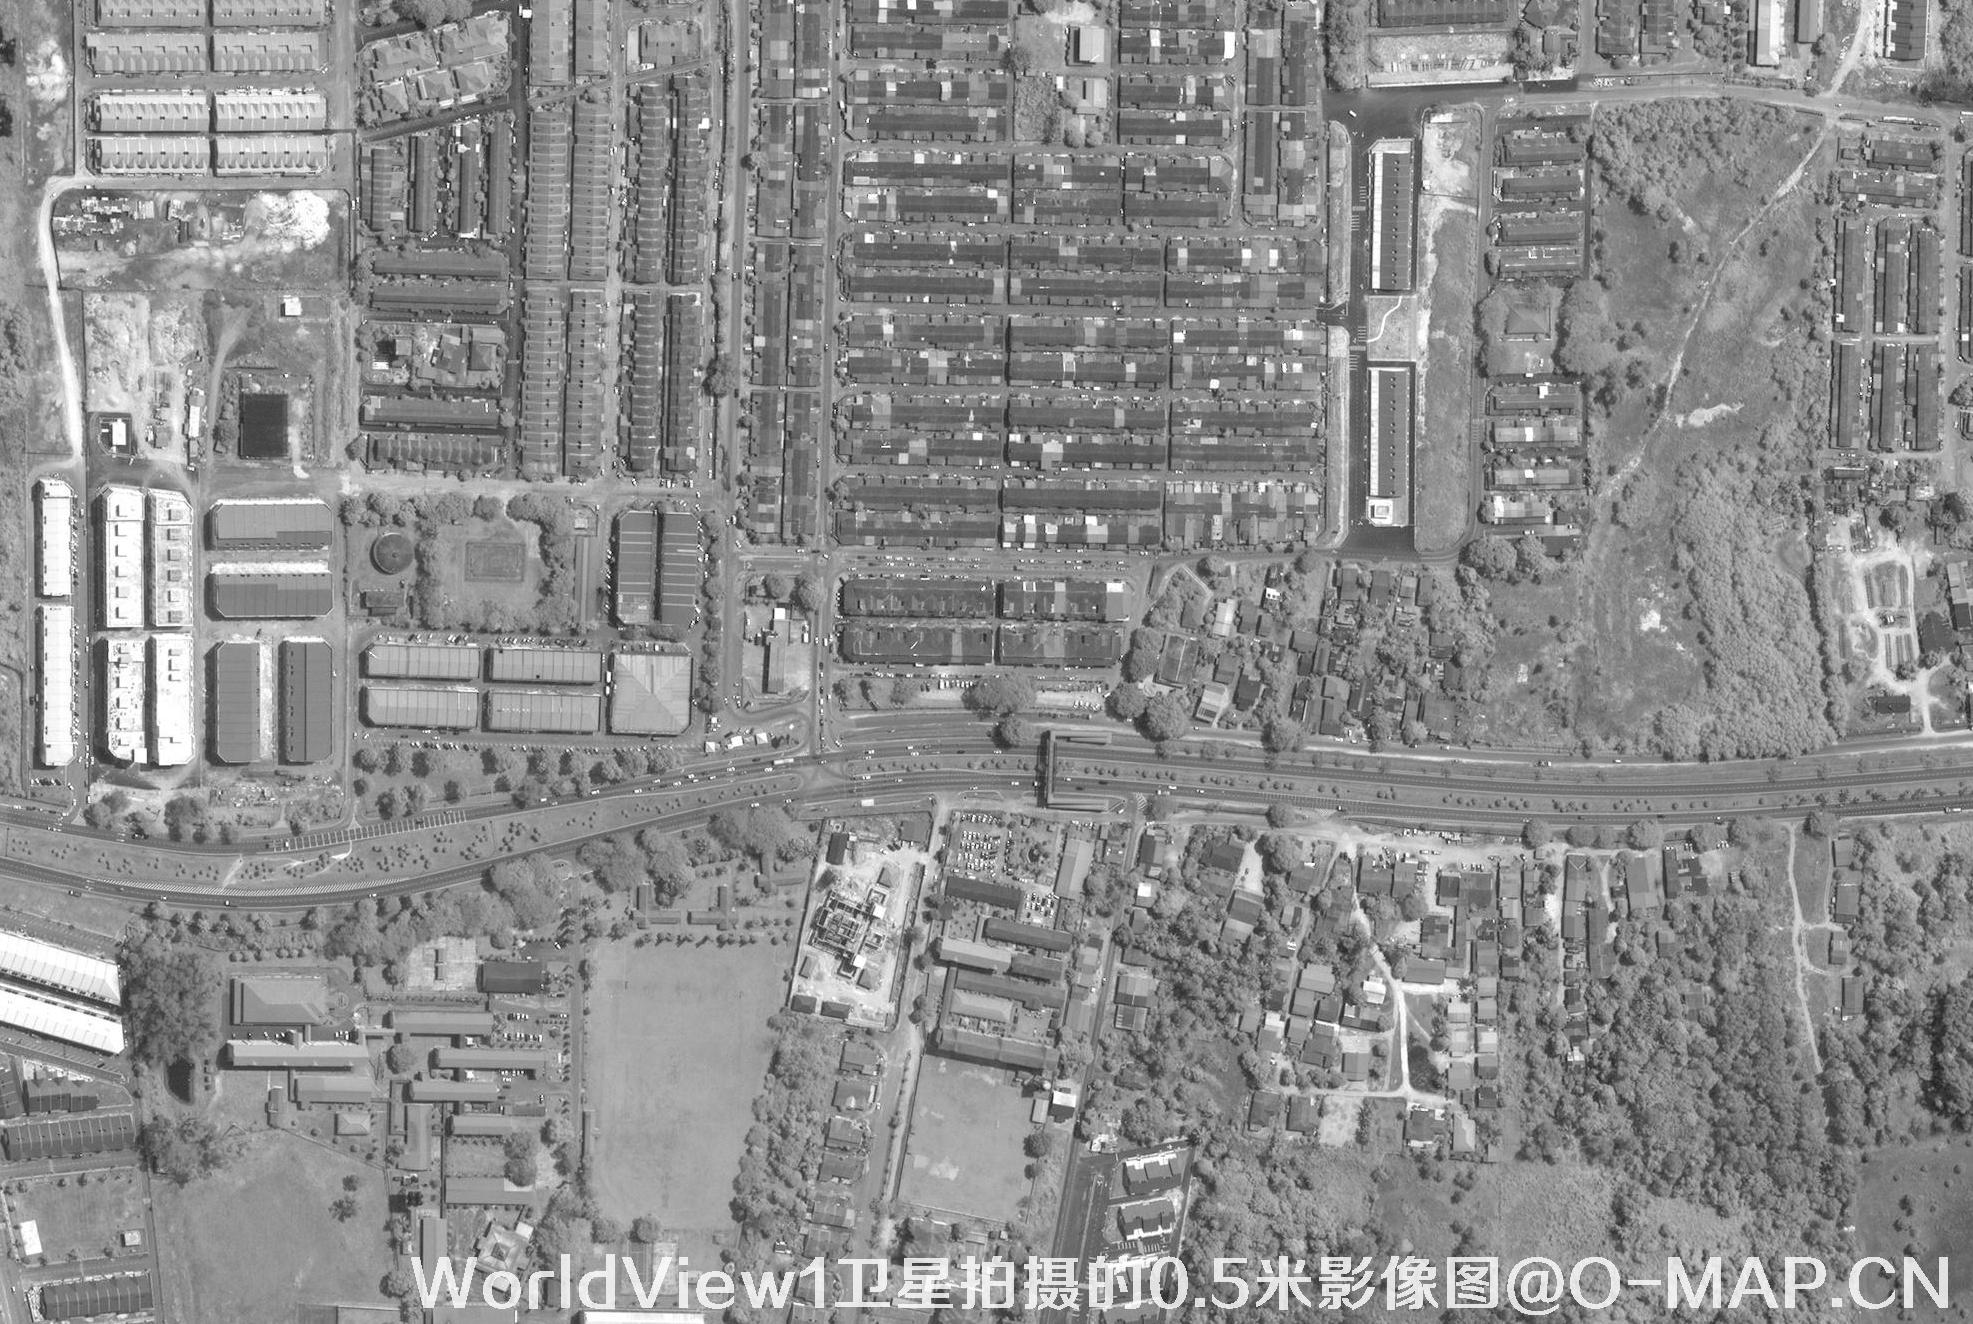 WorldView1卫星拍摄的0.5米分辨率黑白卫星影像图